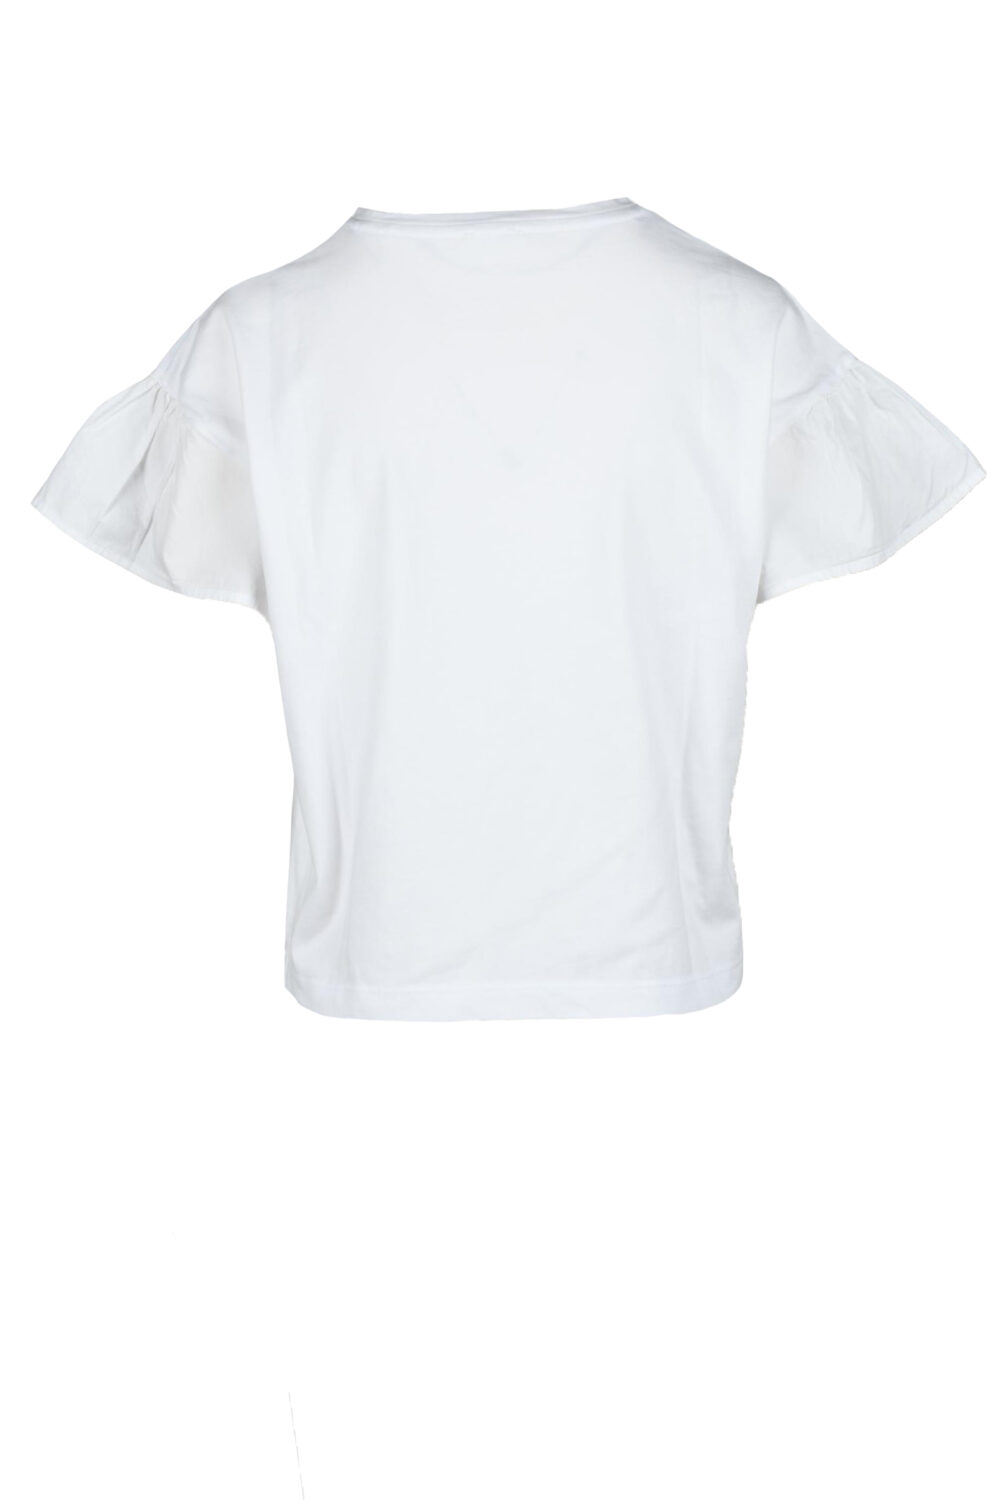 T-shirt SUN68 Bianco - Foto 2